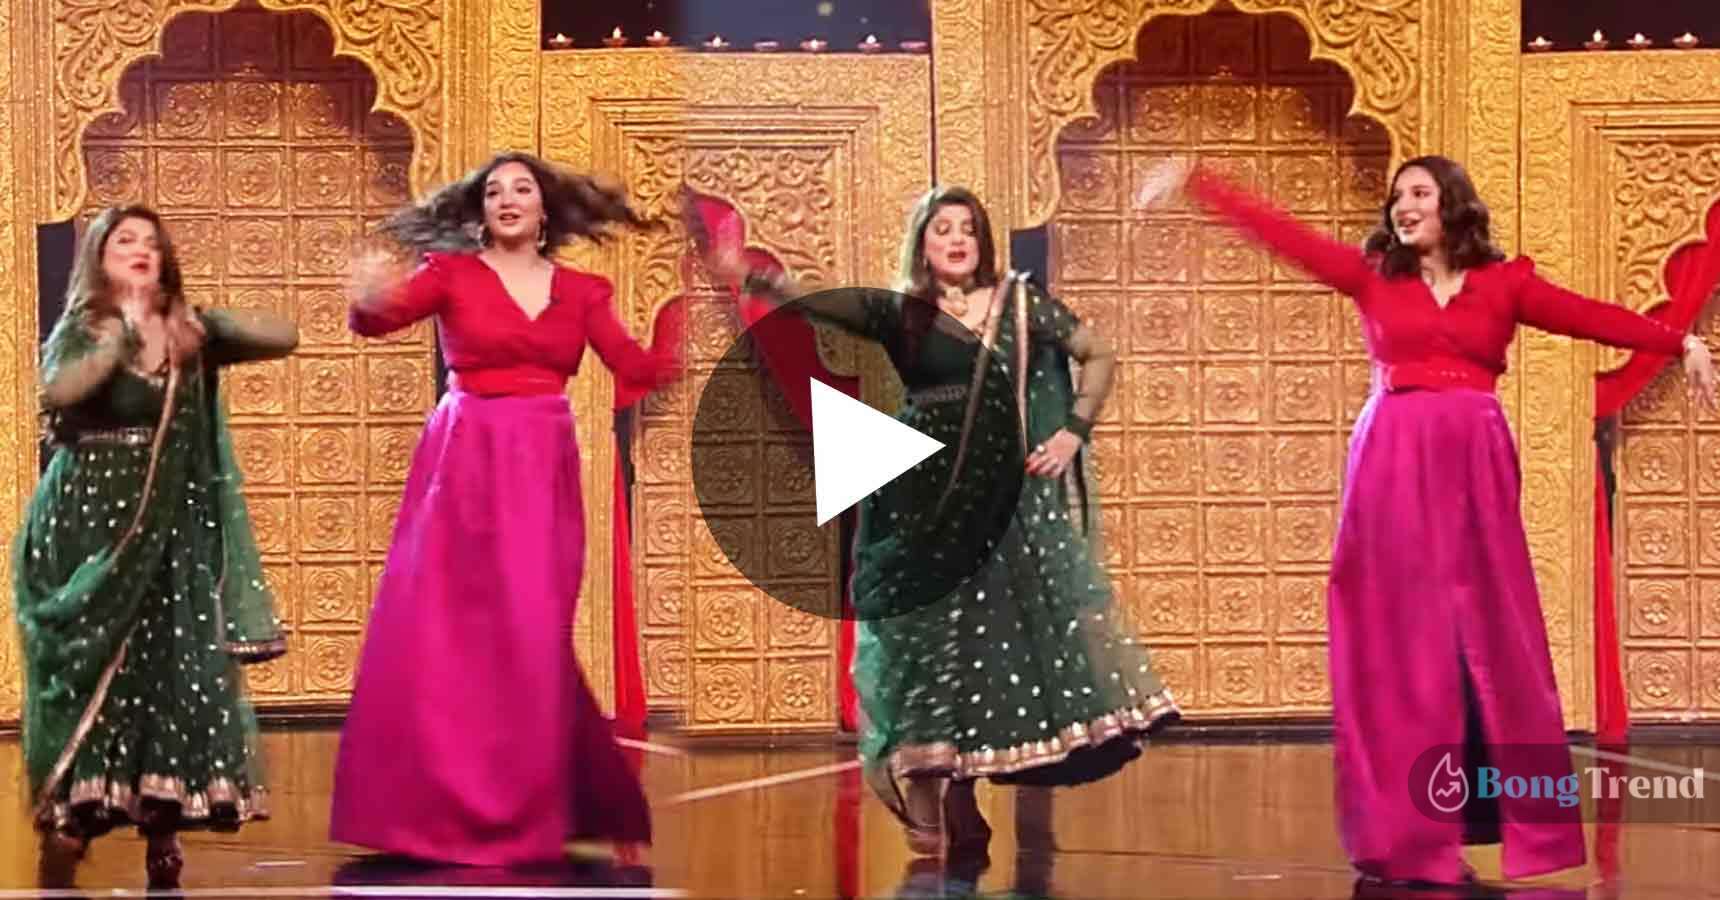 শুভশ্রী গাঙ্গুলি Subhashree Ganguly শ্রাবন্তী চ্যাটার্জী Srabanti Dancing in Dance bangla dance